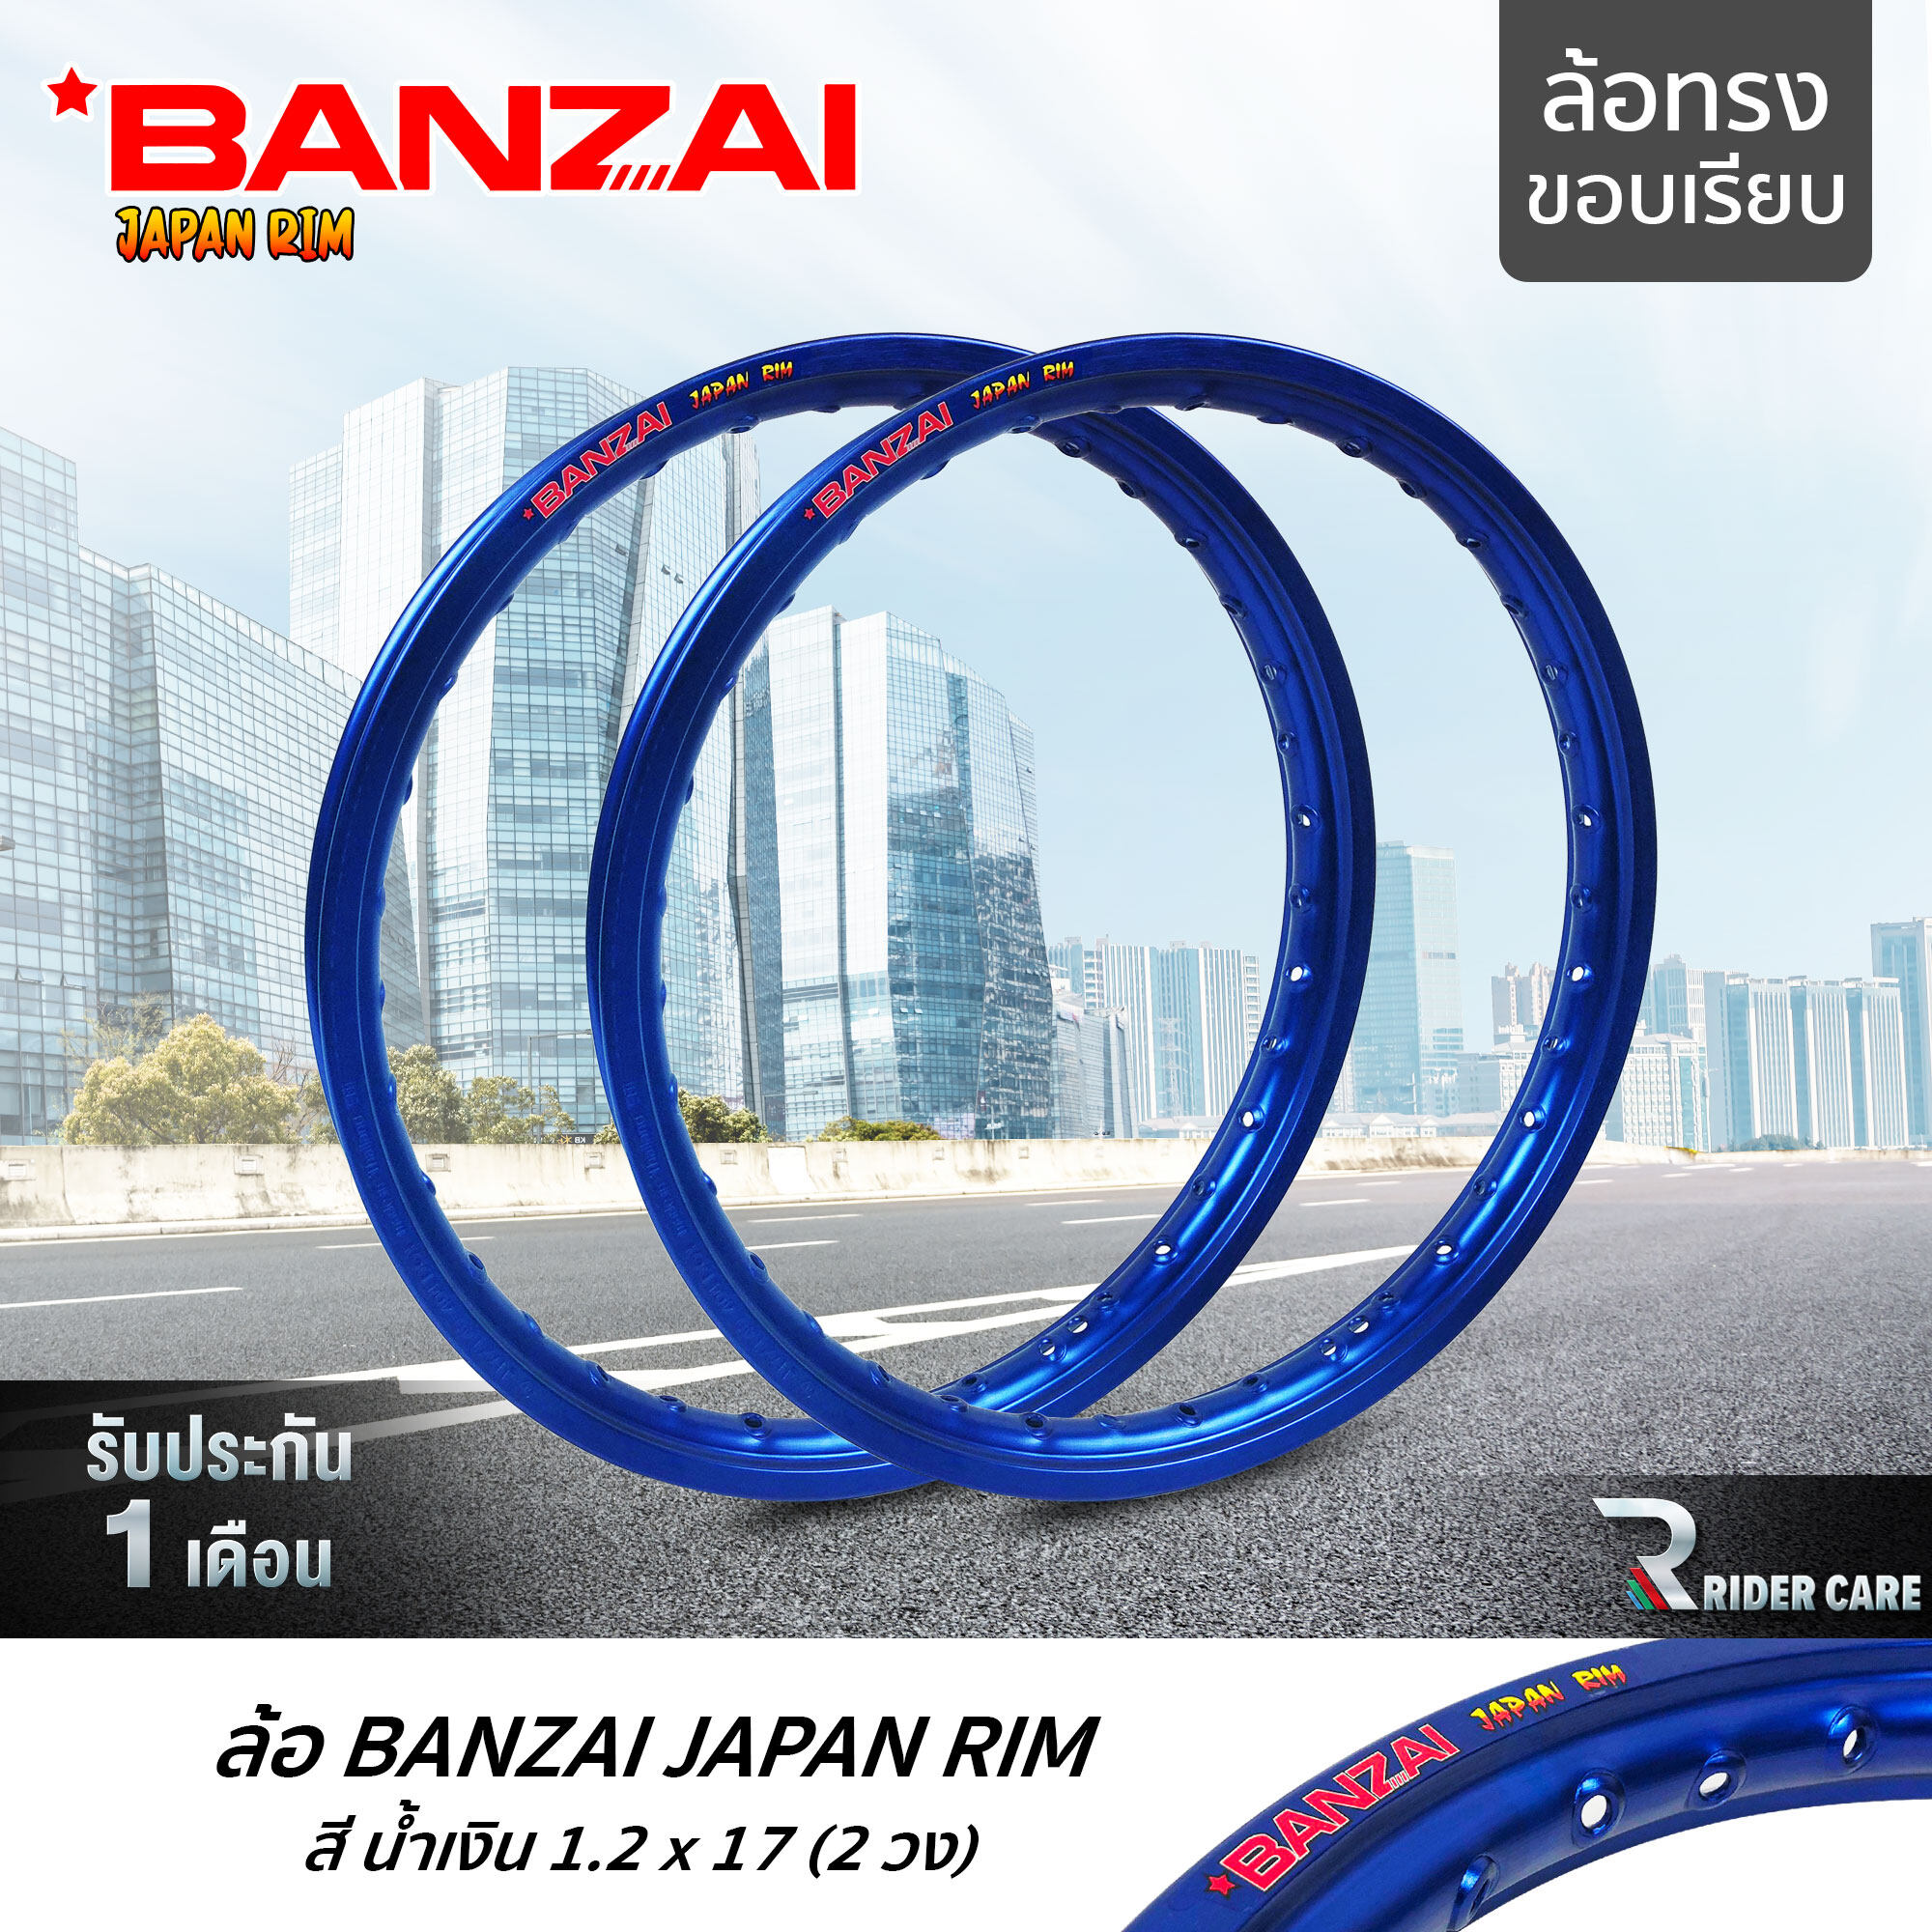 โปรโมชั่น Flash Sale : BANZAI ล้อขอบ 17 บันไซ รุ่น JAPAN RIM 1.2 ขอบ17 นิ้ว ล้อทรงขอบเรียบ แพ็คคู่ 2 วง วัสดุอลูมิเนียม ของแท้ จักรยานยนต์ สี น้ำเงิน